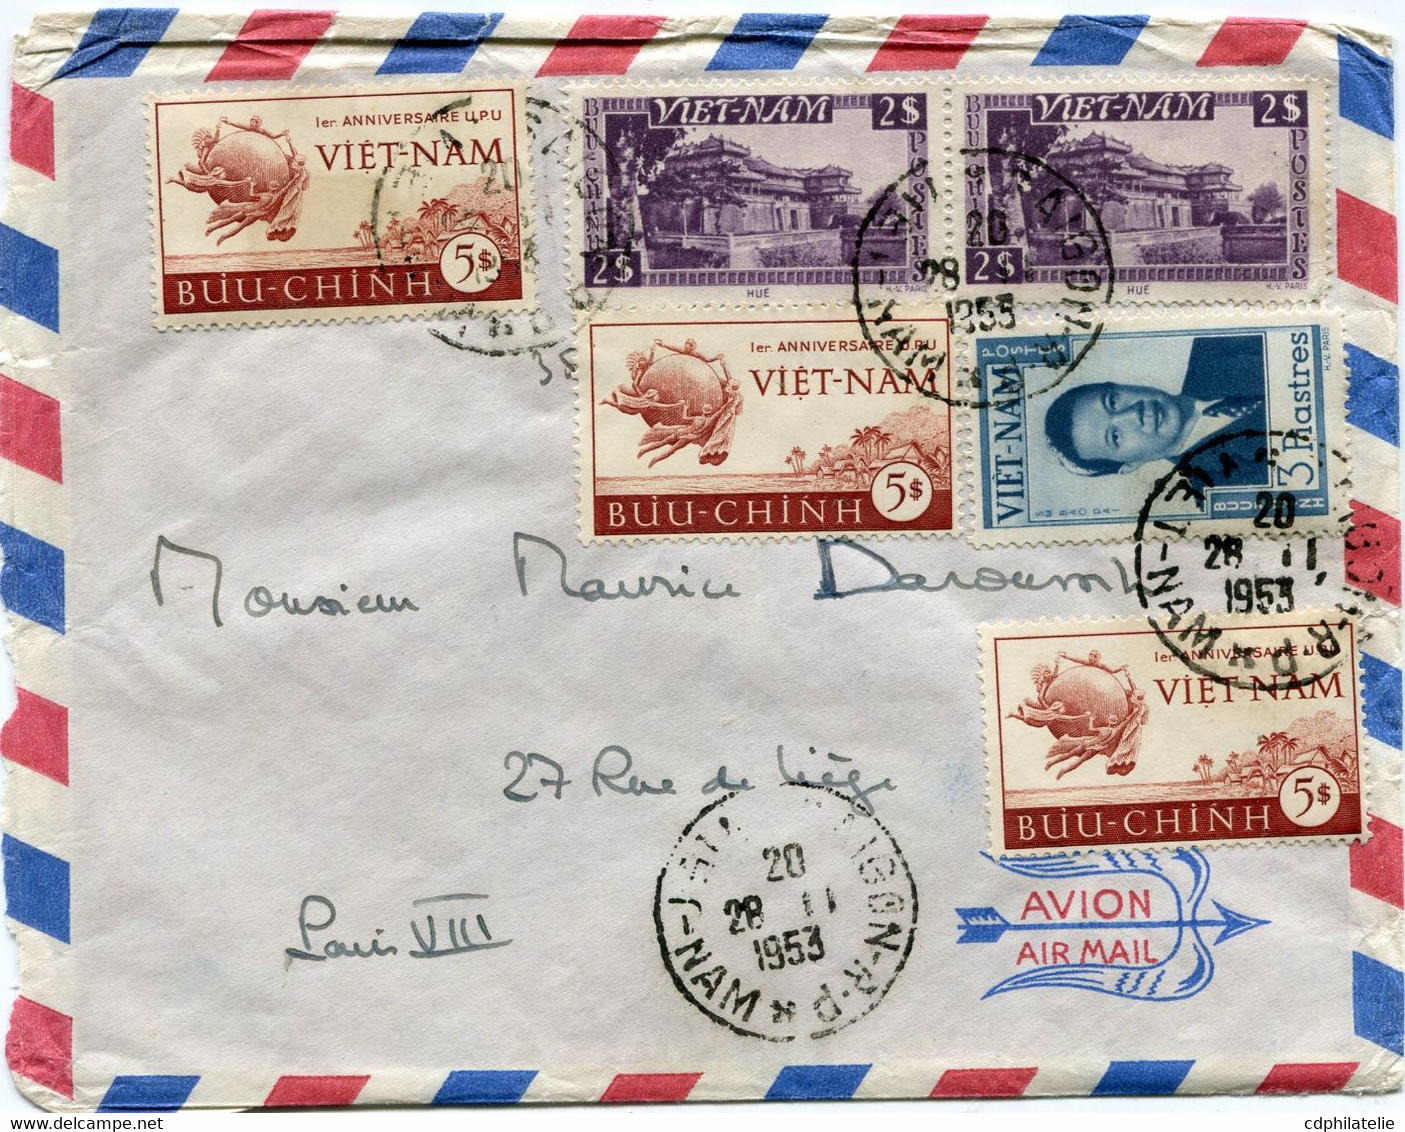 VIET-NAM LETTRE PAR AVION DEPART SAIGON 28-11-1953 VIET-NAM POUR LA FRANCE - Viêt-Nam